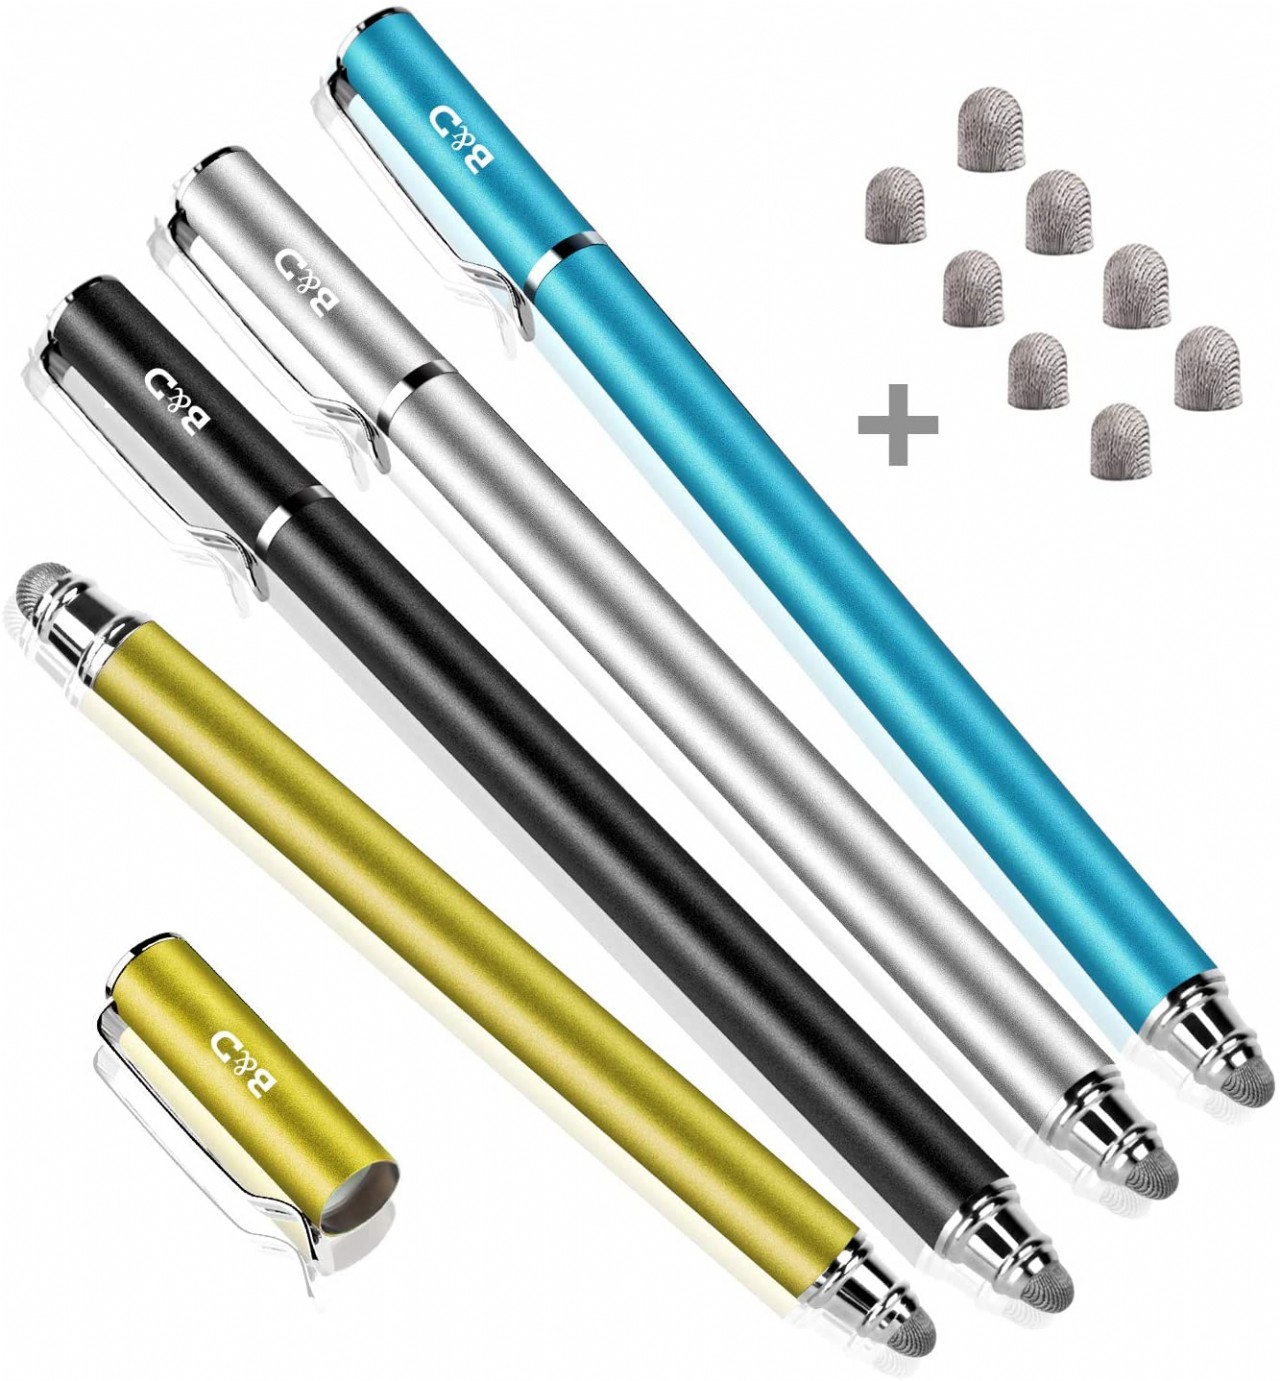 Depot New 5mm High-Sensivity Fiber Tip Capacitive Stylus Dual-tip Universal Touchscreen Pen for All